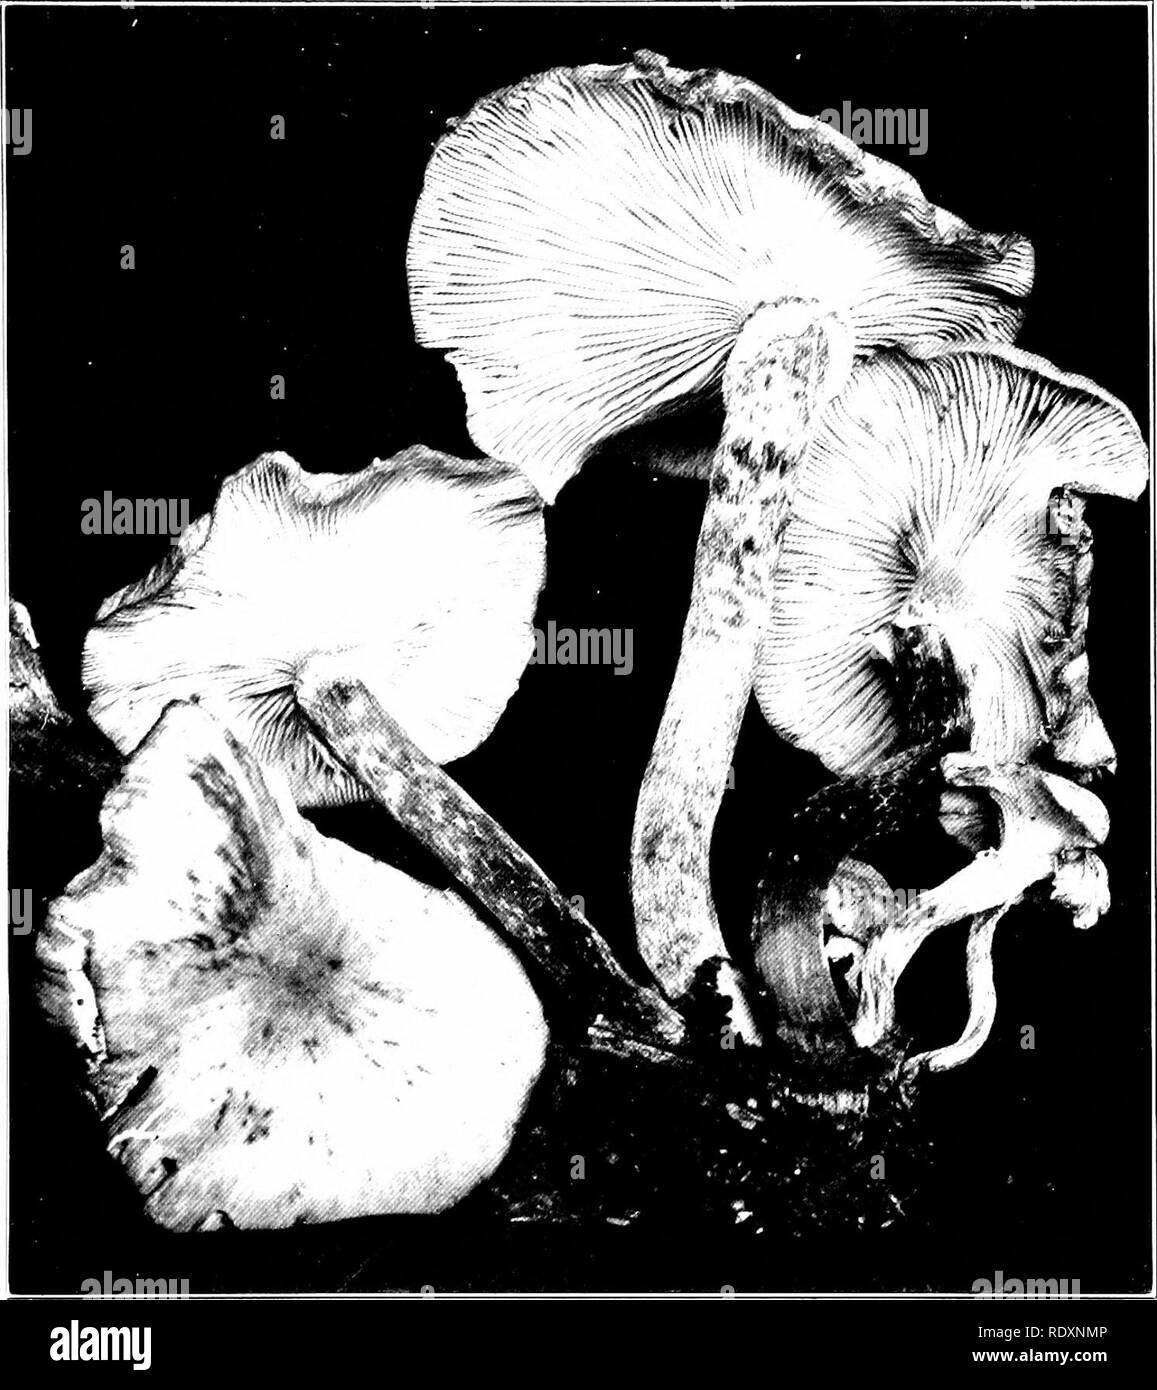 . Einen vorläufigen Bericht über den Hymeniales von Connecticut. Basidiomyceten; Pilze. Platte IV. Armillaria Mellea. Honig-farbigen Armillaria. (Natürliche Größe.) Kappe bedeckt mit minute Büschel von braun oder schwärzlich Haare, manchmal Kahl; Fleisch weiß oder weißlich.. Bitte beachten Sie, dass diese Bilder sind von der gescannten Seite Bilder, die digital für die Lesbarkeit verbessert haben mögen - Färbung und Aussehen dieser Abbildungen können nicht perfekt dem Original ähneln. extrahiert. Weiß, Edward Albert, 1872-1943. [Hartford Hartford] drücken, wird der Fall, Lockwood & Amp; Brainard C. Stockfoto